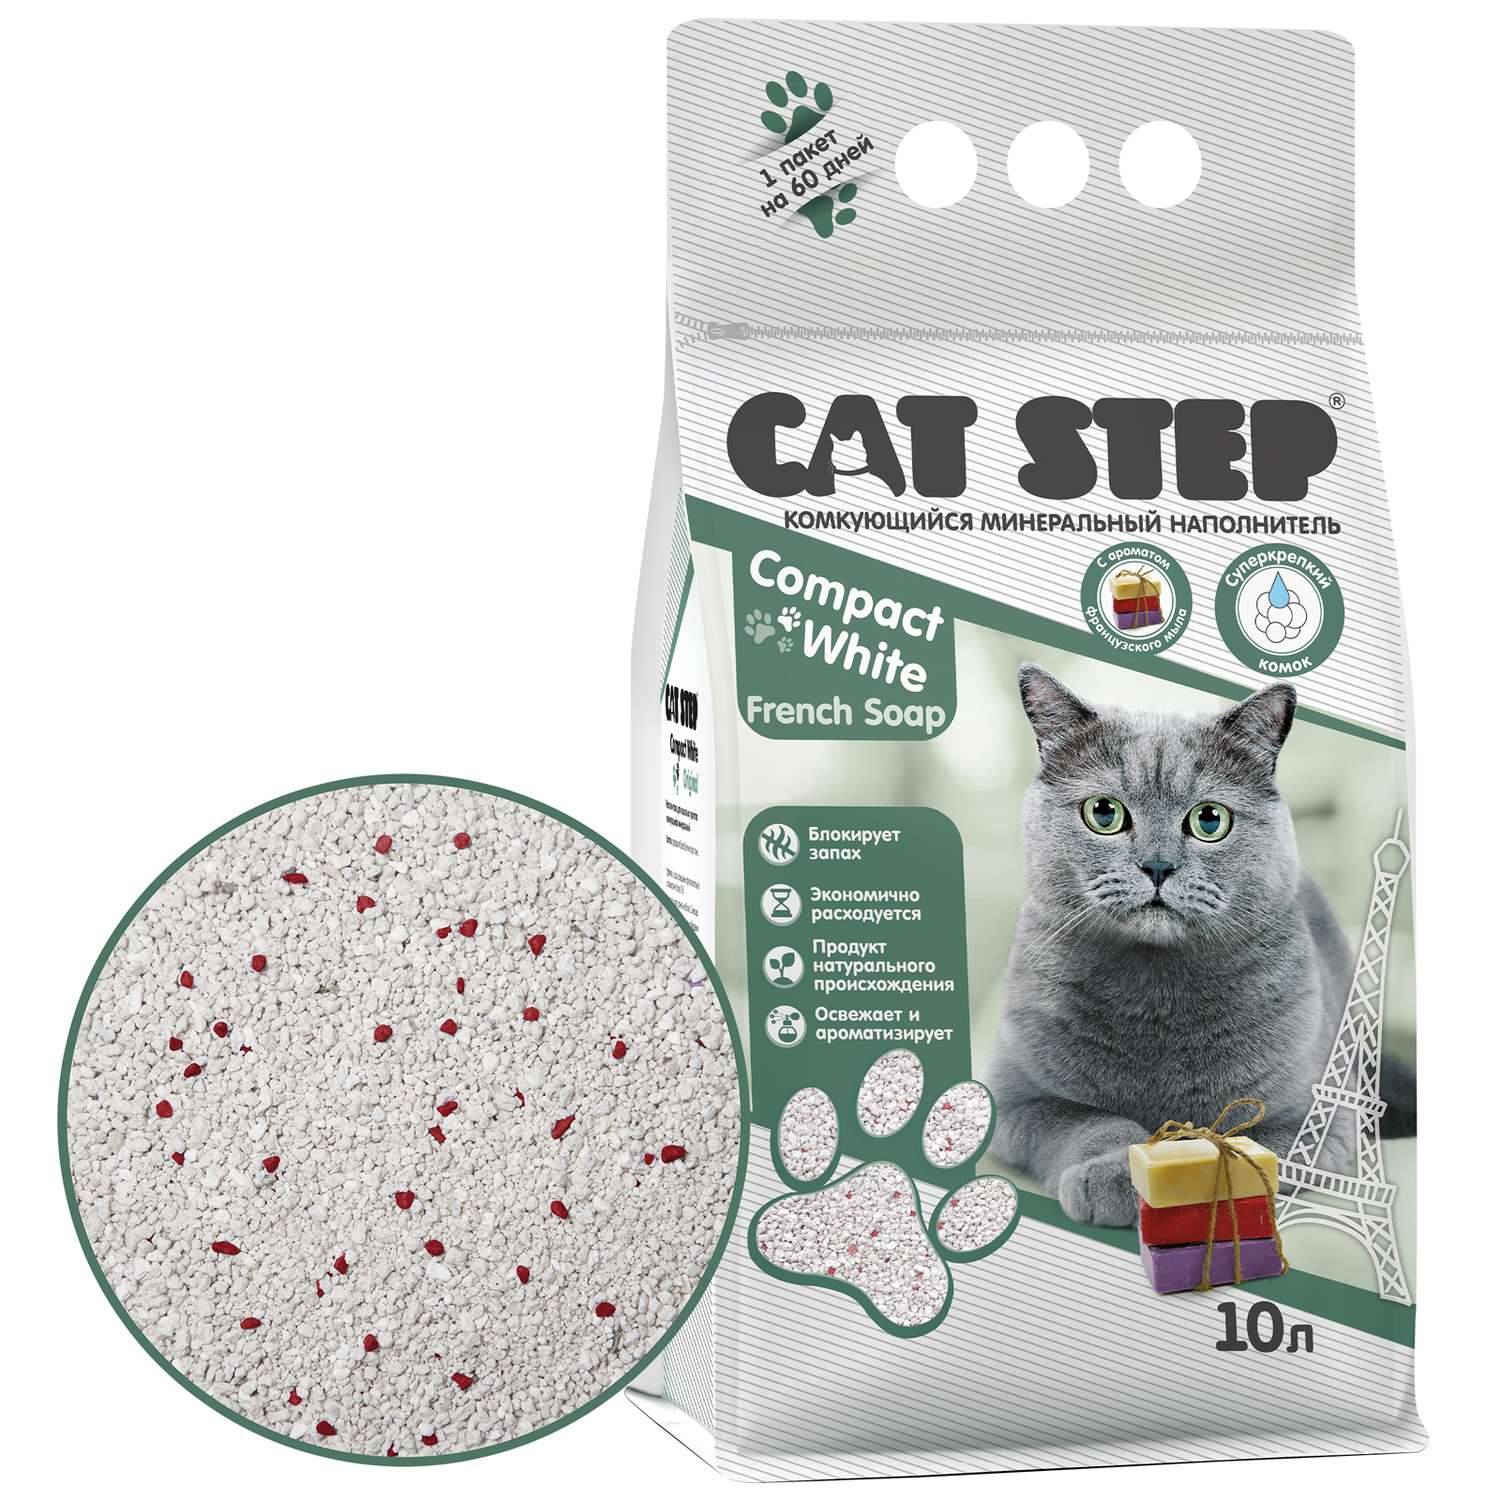 Наполнитель для кошек Cat Step Compact White French Soap комкующийся минеральный 10л - фото 2